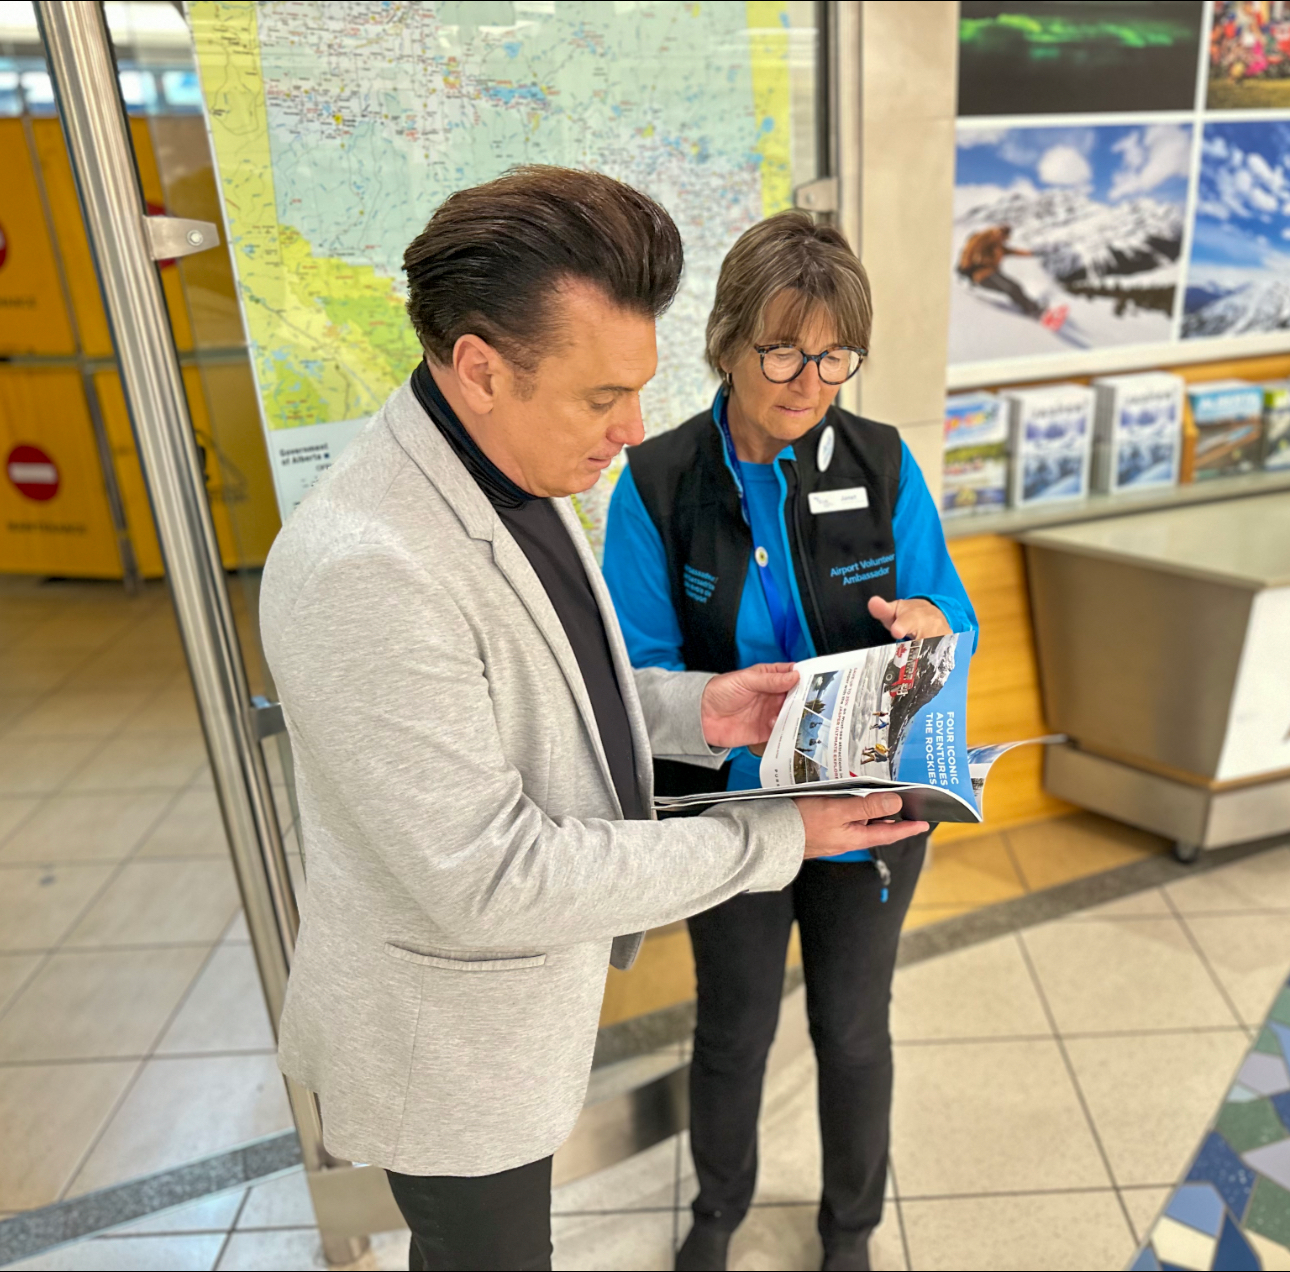 Airport volunteer ambassador showing a passenger a magazine